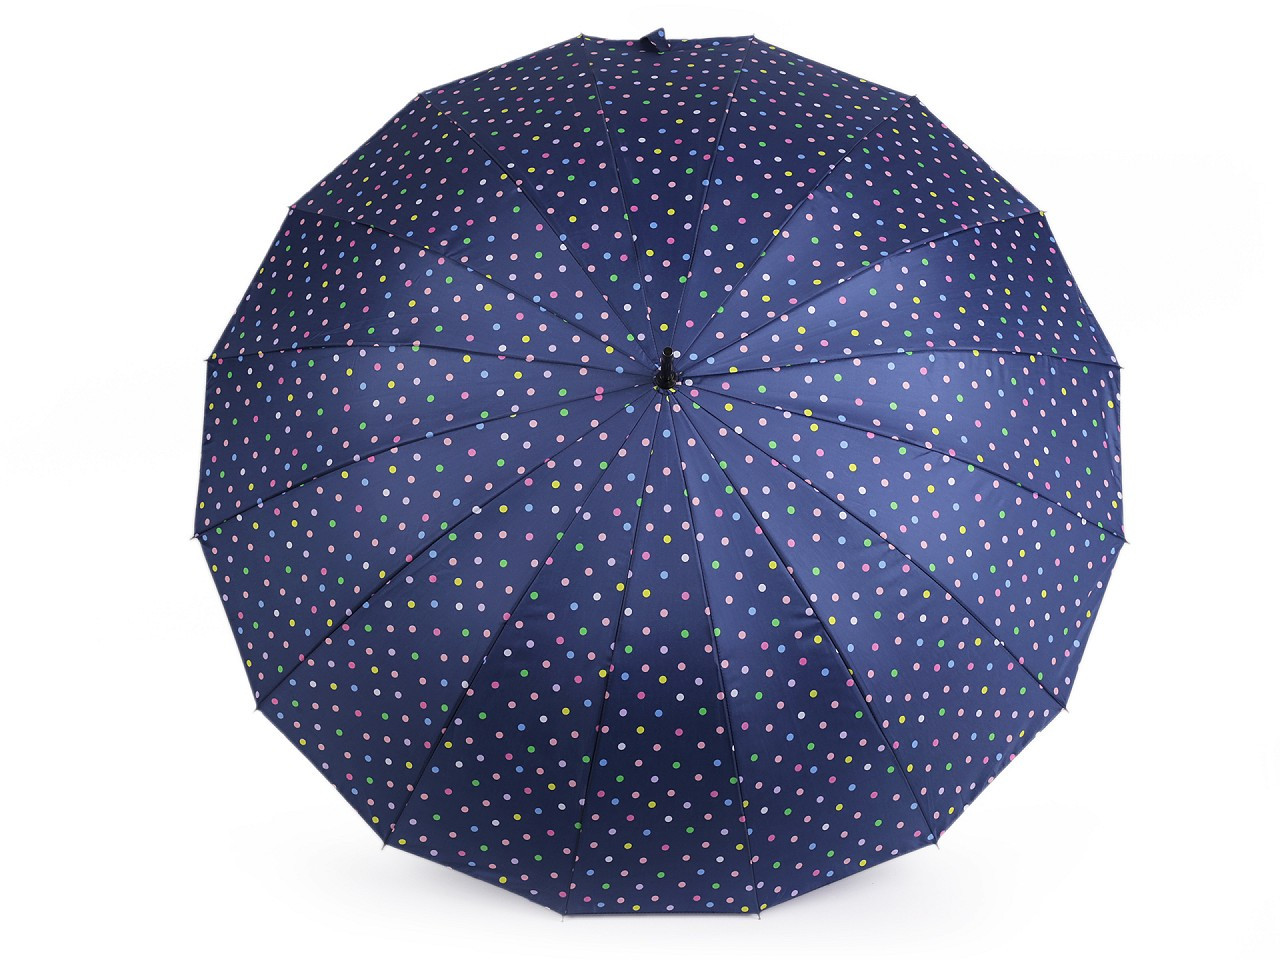 Velký rodinný deštník s puntíky, barva 2 modrá tmavá